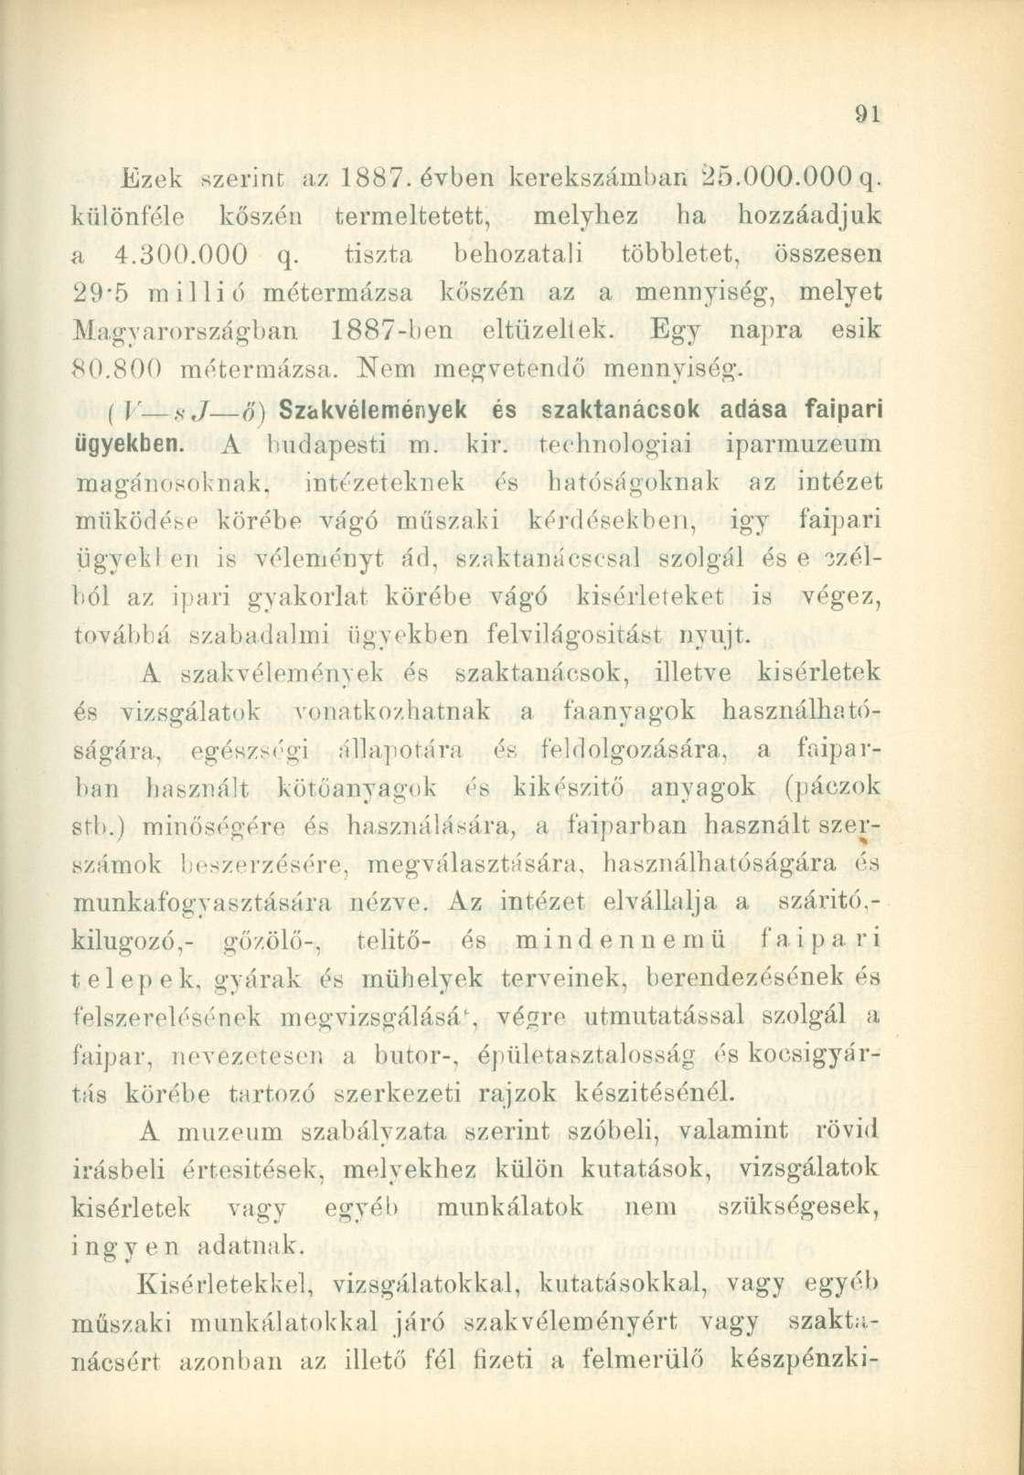 Ezek szerint az 1887. évben kerekszámbari 25.000.000 q. különféle kőszén termeltetett, melyhez ha hozzáadjuk a 4.300.000 q. tiszta behozatali többletet, összesen 29*5 millió métermázsa kőszén az a mennyiség, melyet Magyarországban 1887-ben eltüzellek.